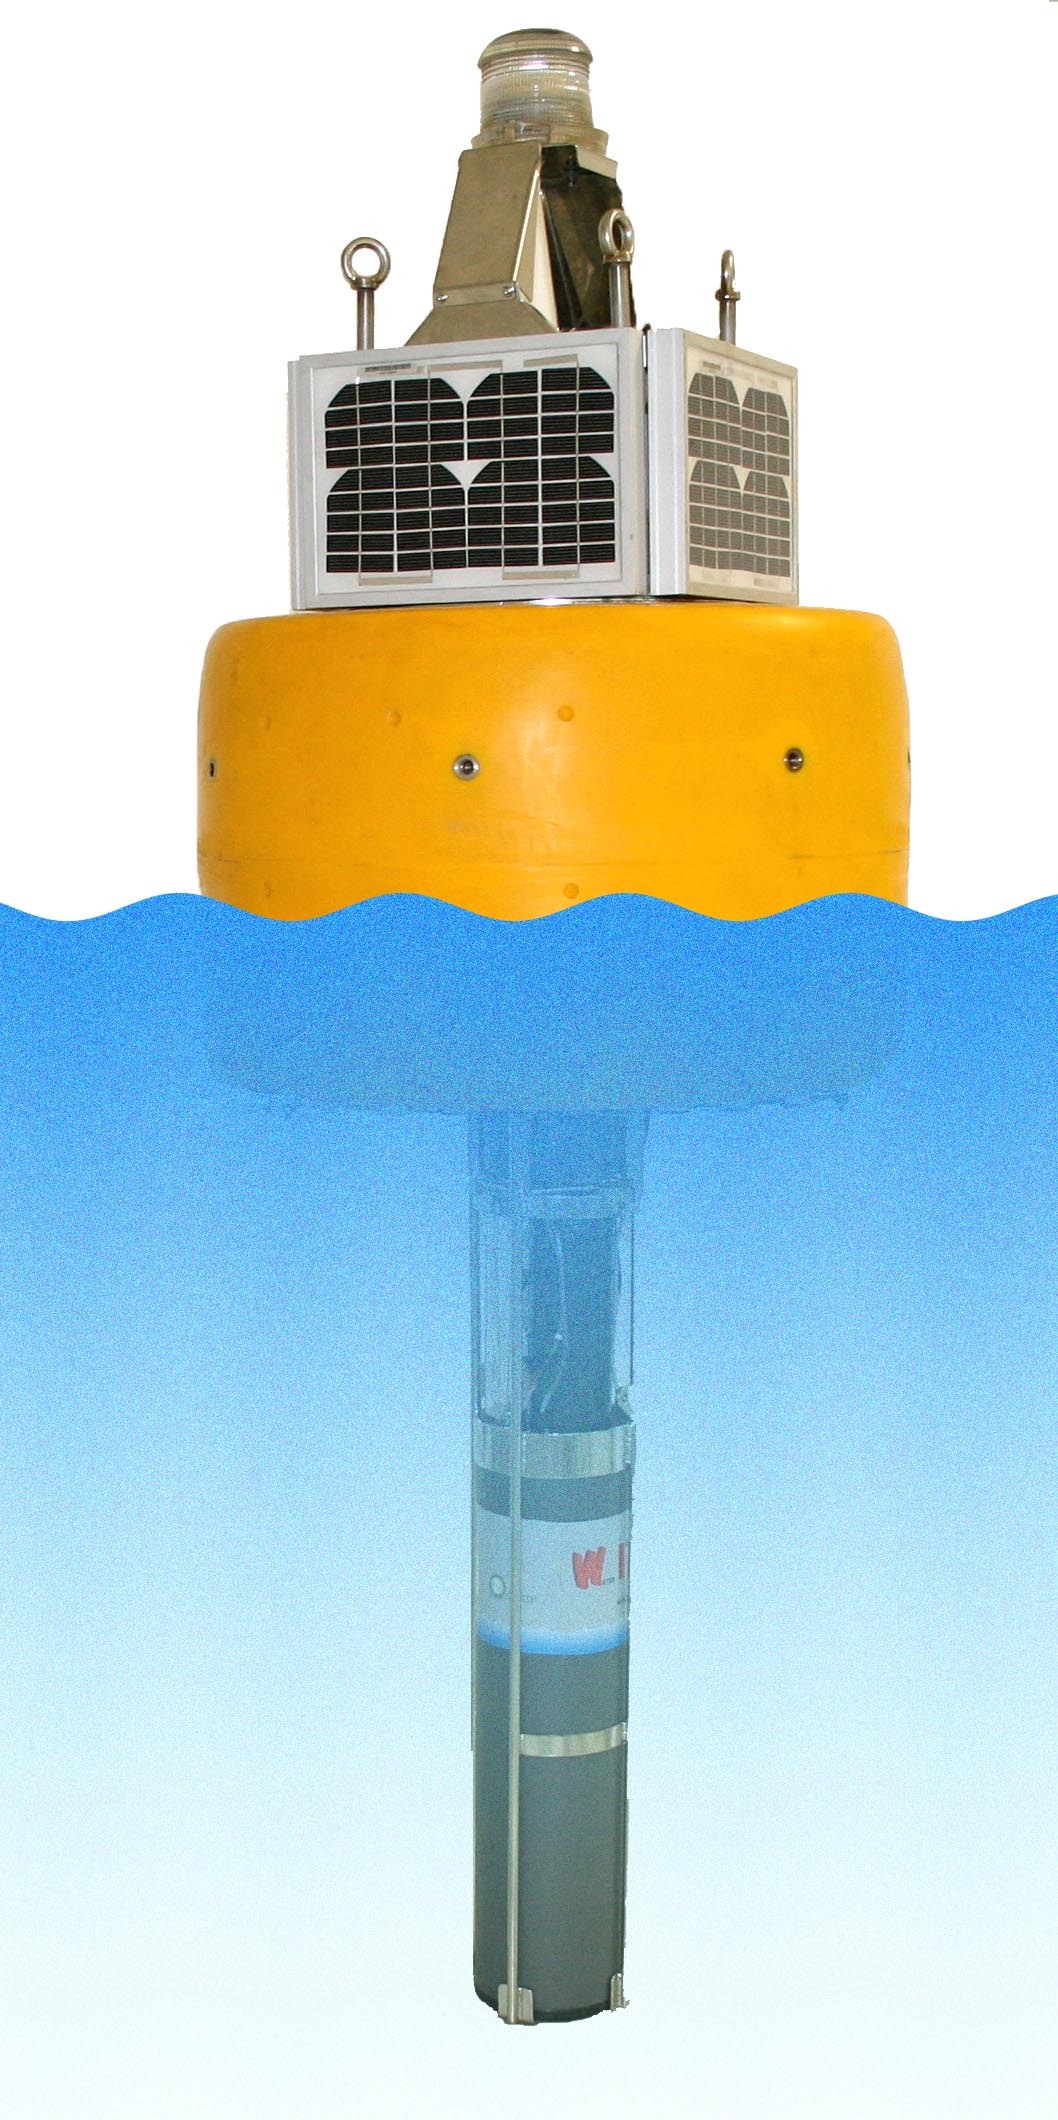 聚光科技WIZ系列水质分析系统